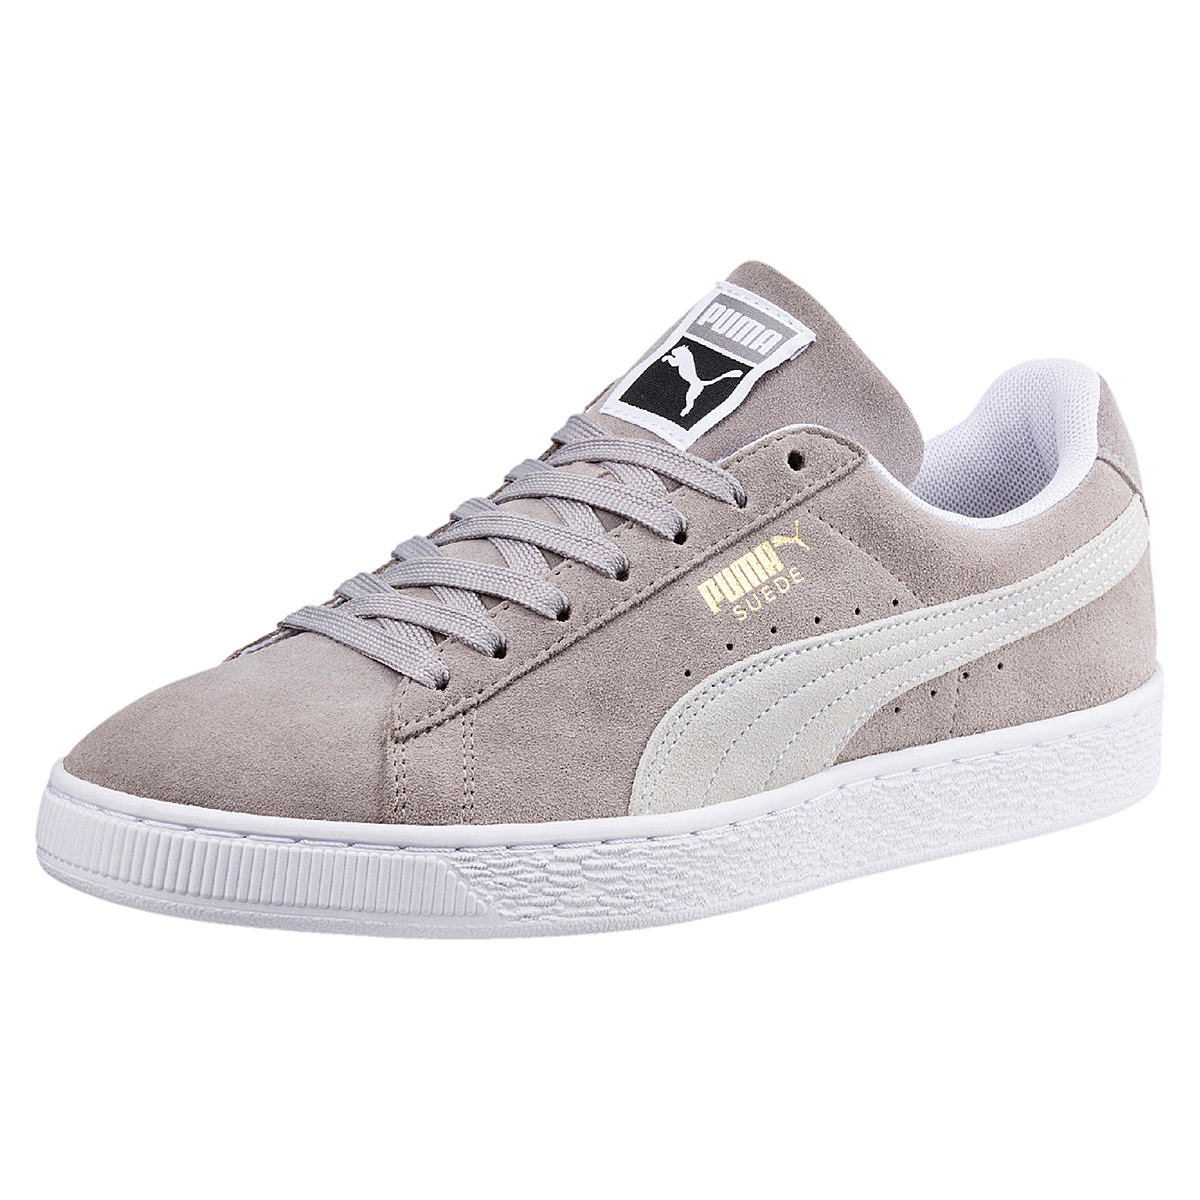 Puma Suede Classic Unisex Sneaker Low-Top grau 365347 01